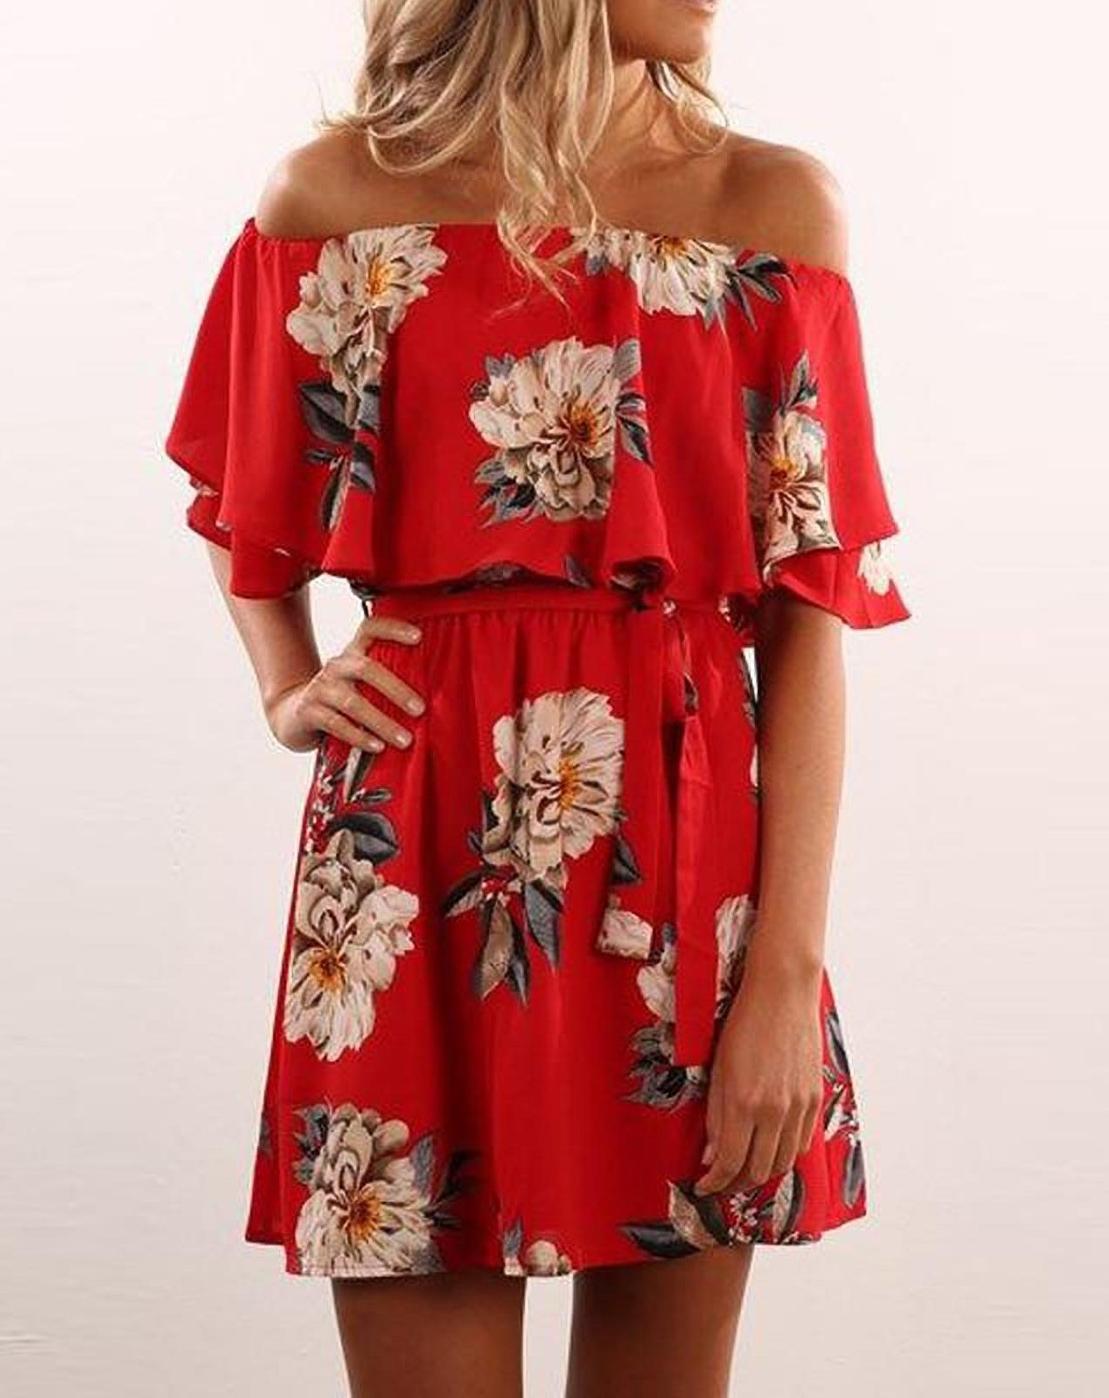 red off shoulder summer dress